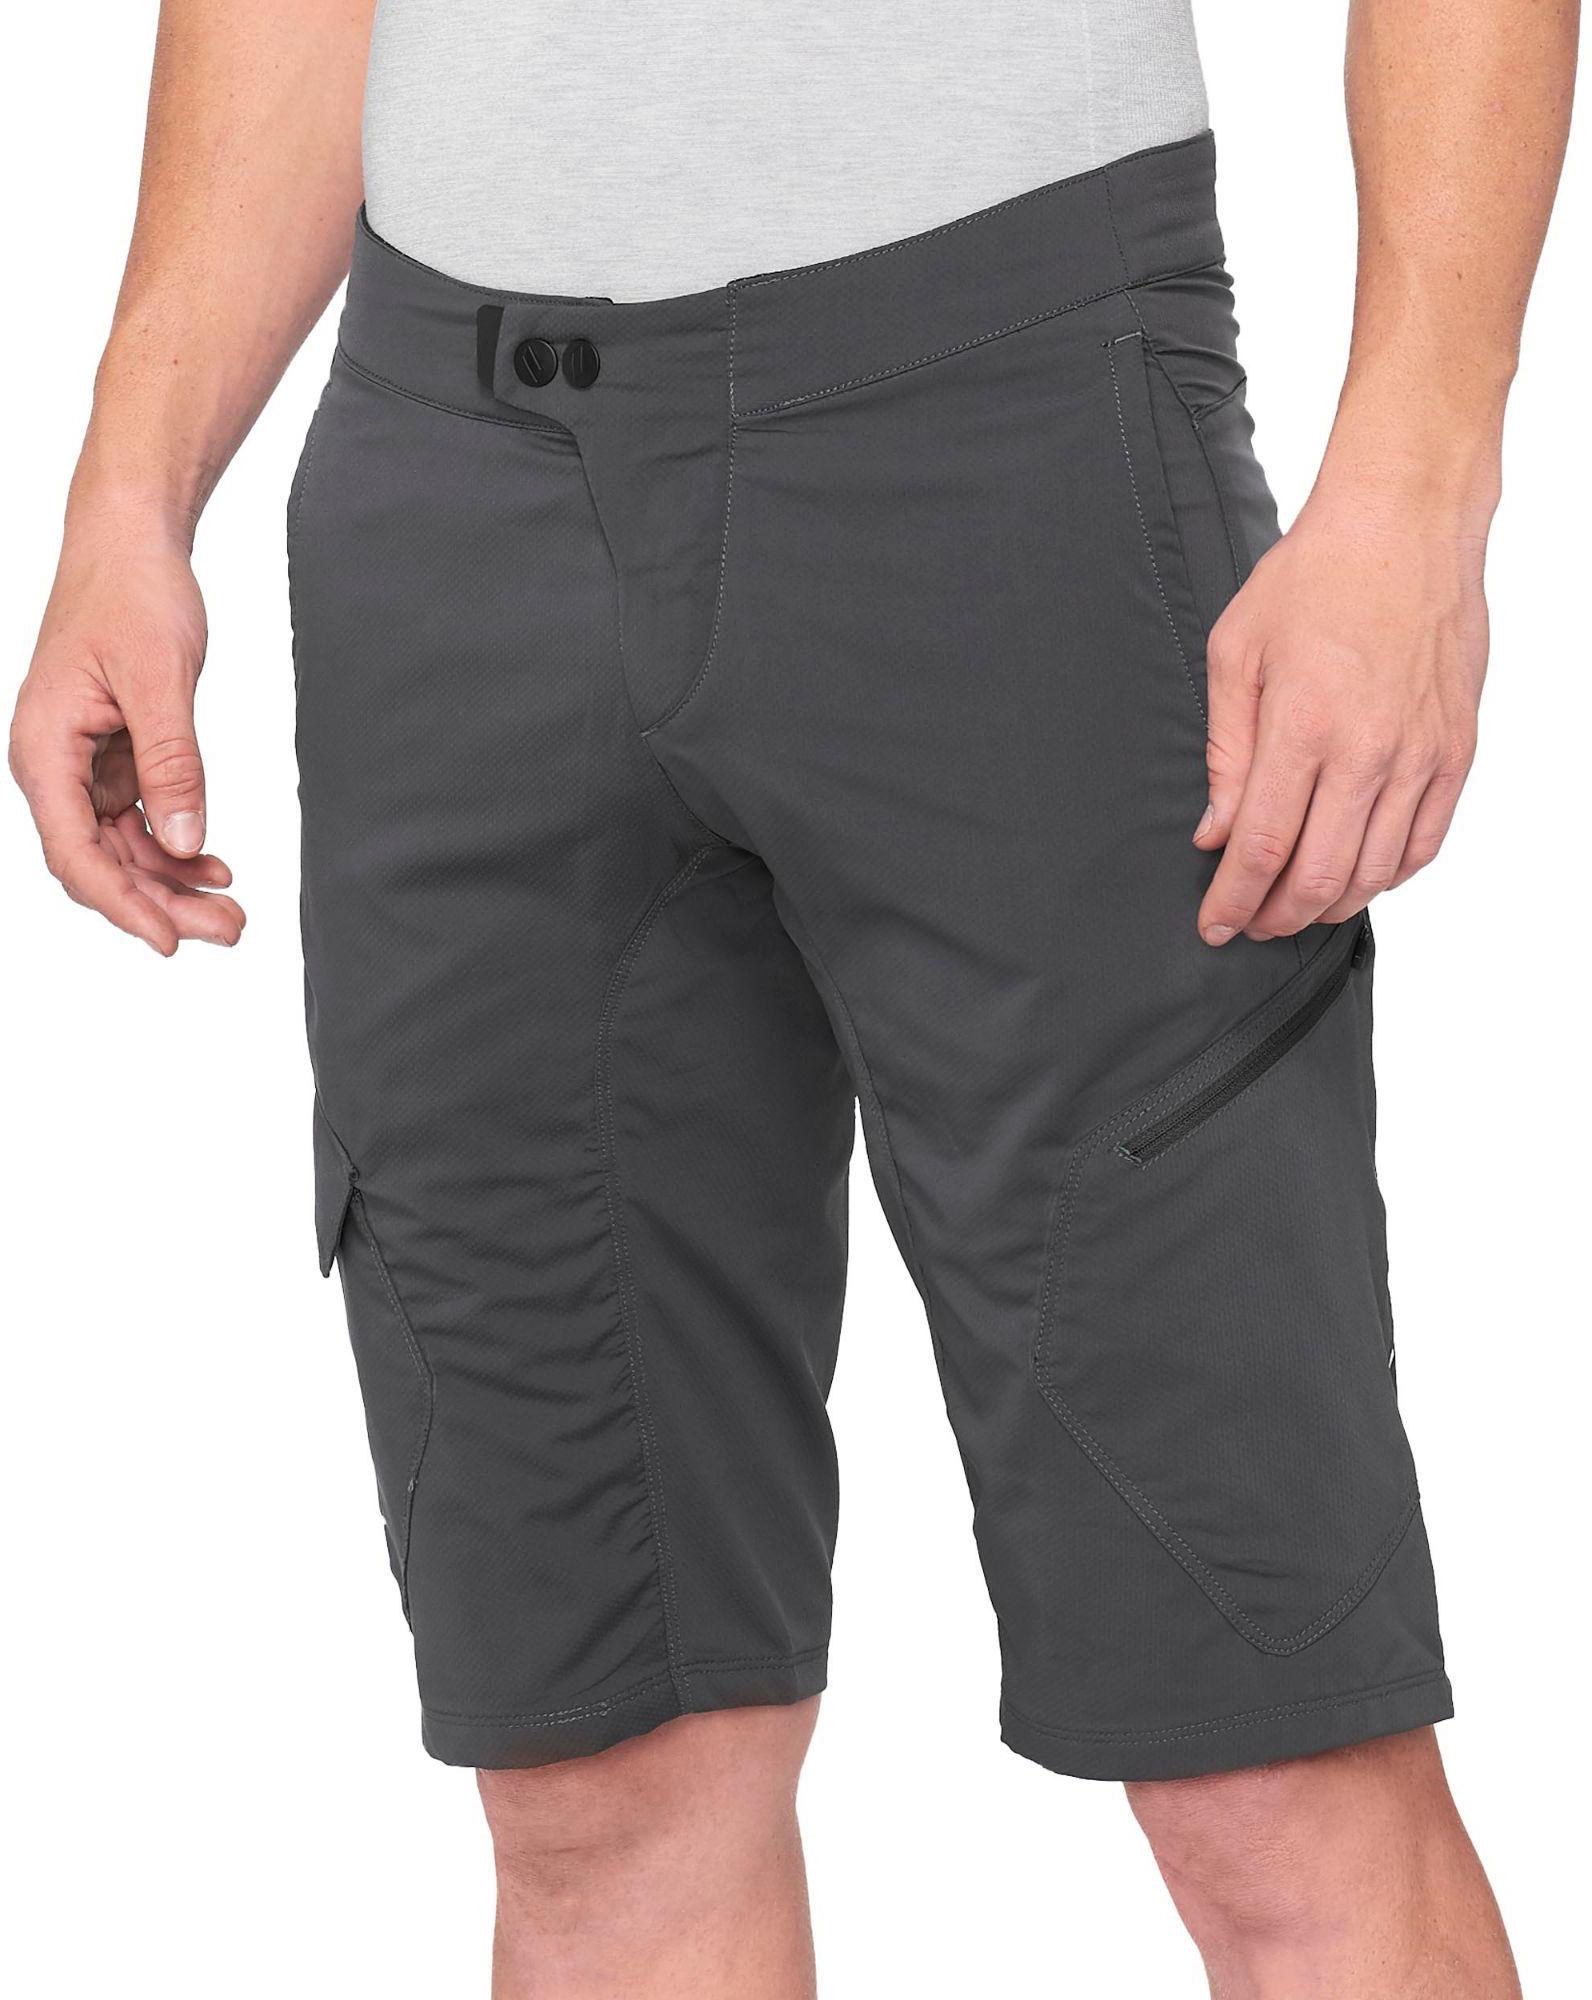 100% Ridecamp Shorts - Charcoal